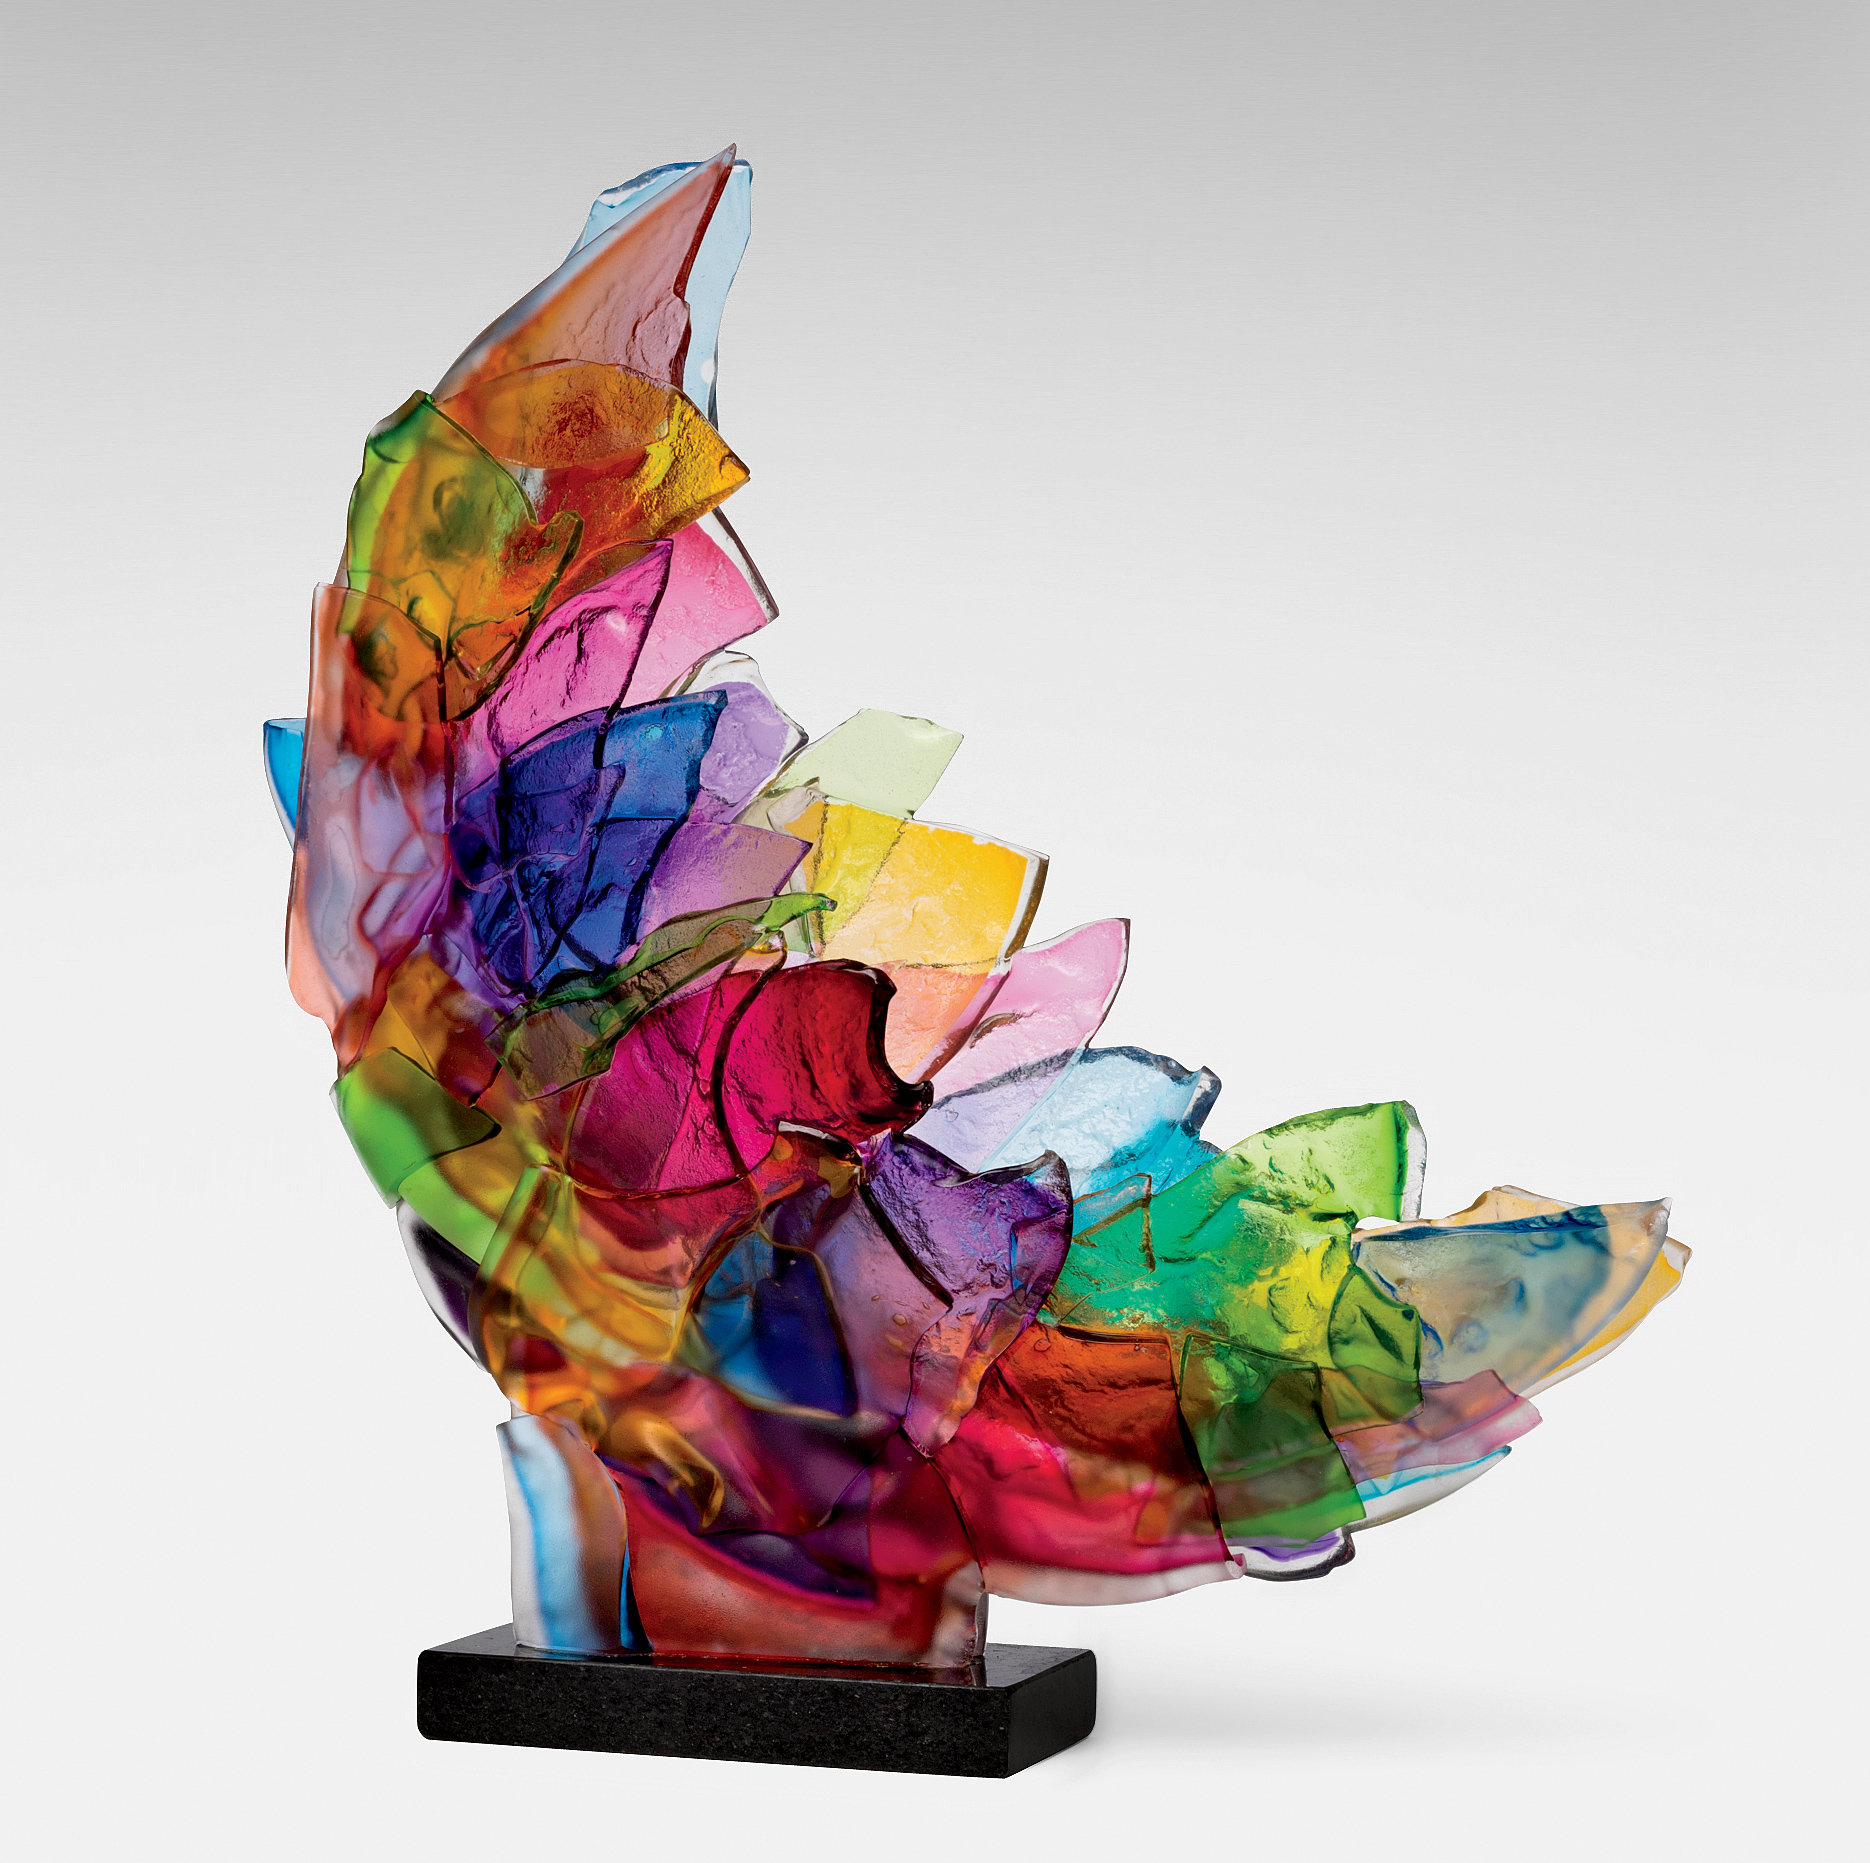 Echo By Caleb Nichols Art Glass Sculpture Artful Home Fused Glass Art Glass Art Sculpture